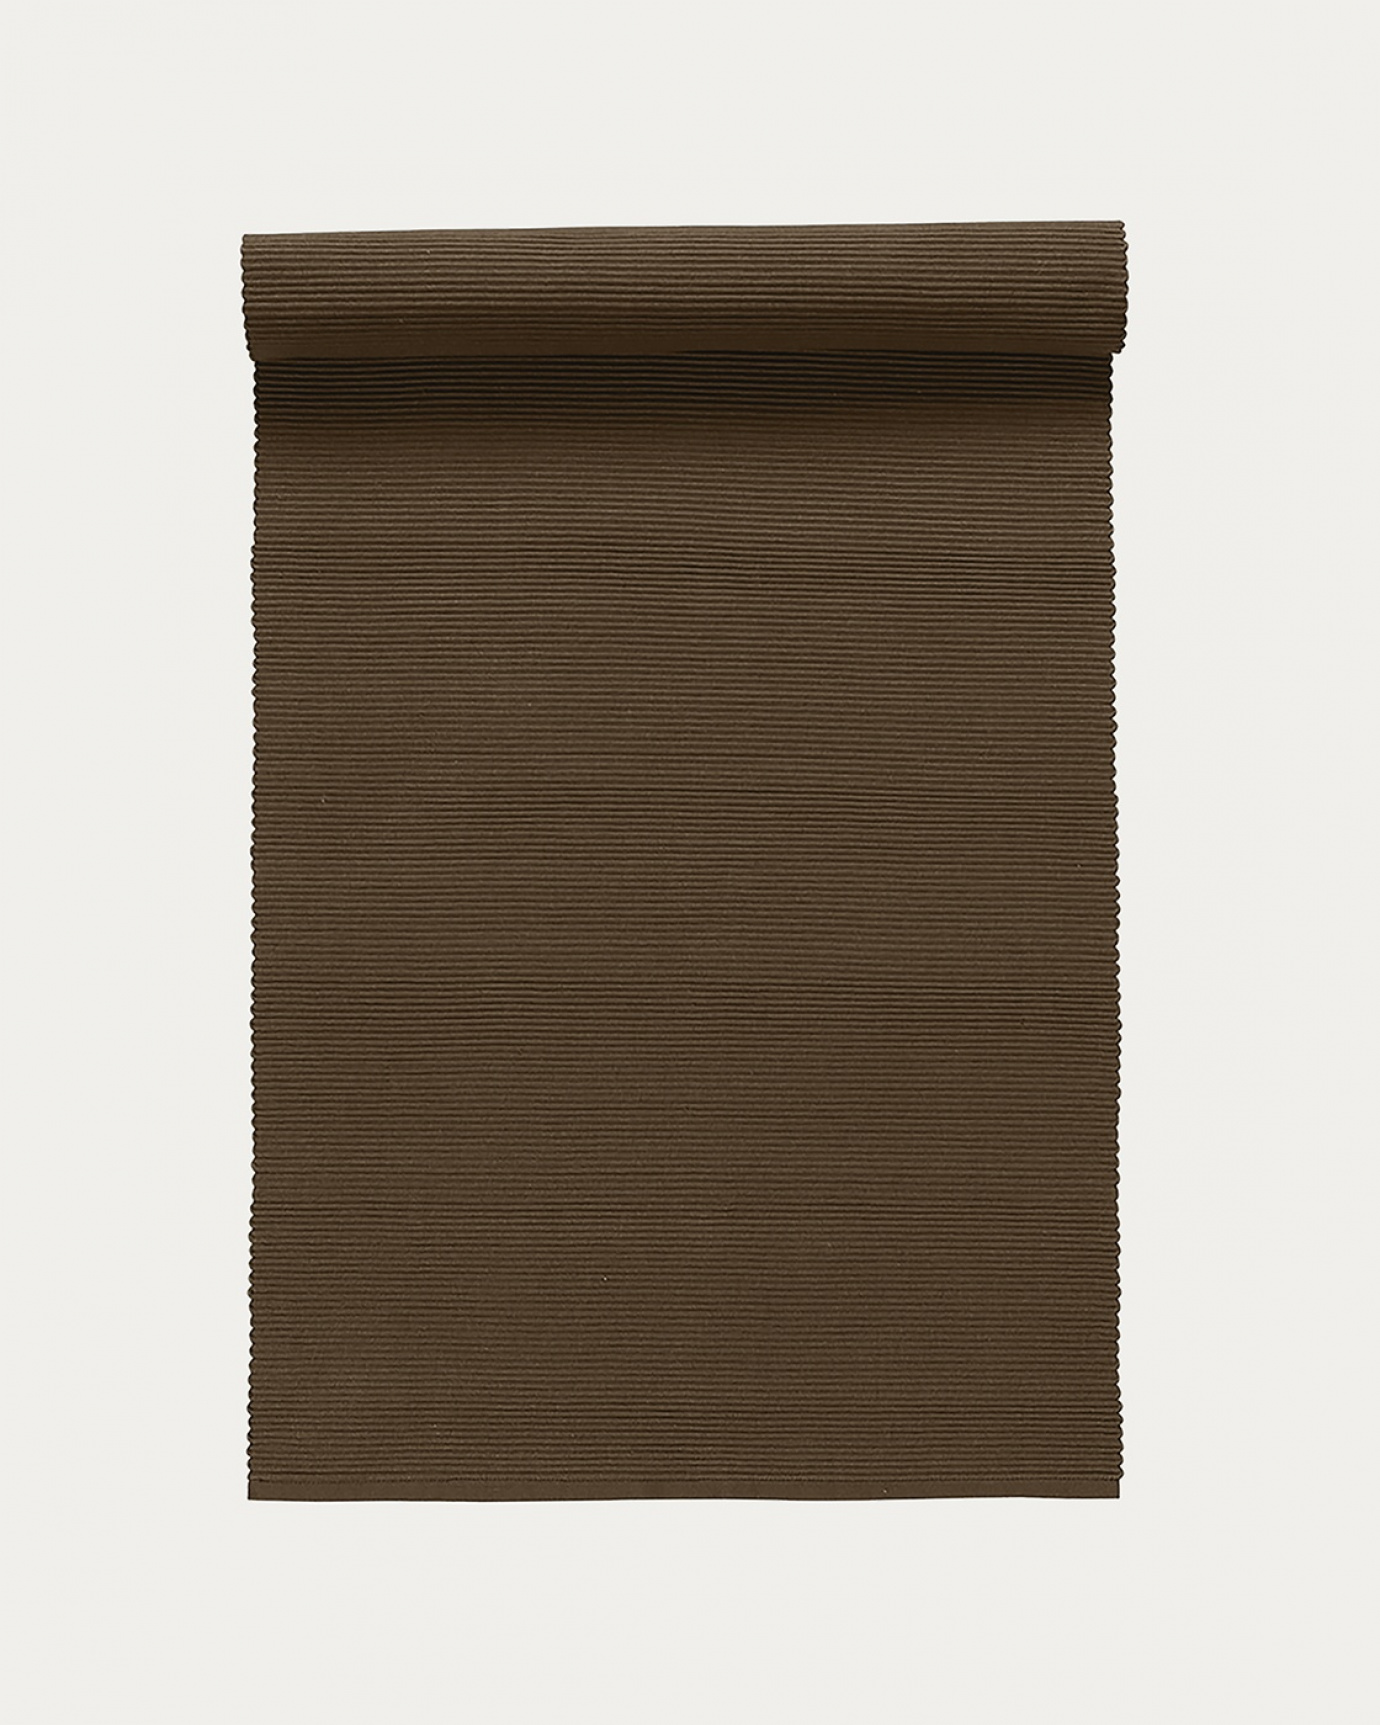 Image du produit chemin de table UNI marron ours en coton doux de qualité côtelée de LINUM DESIGN. Taille 45 x 150 cm.